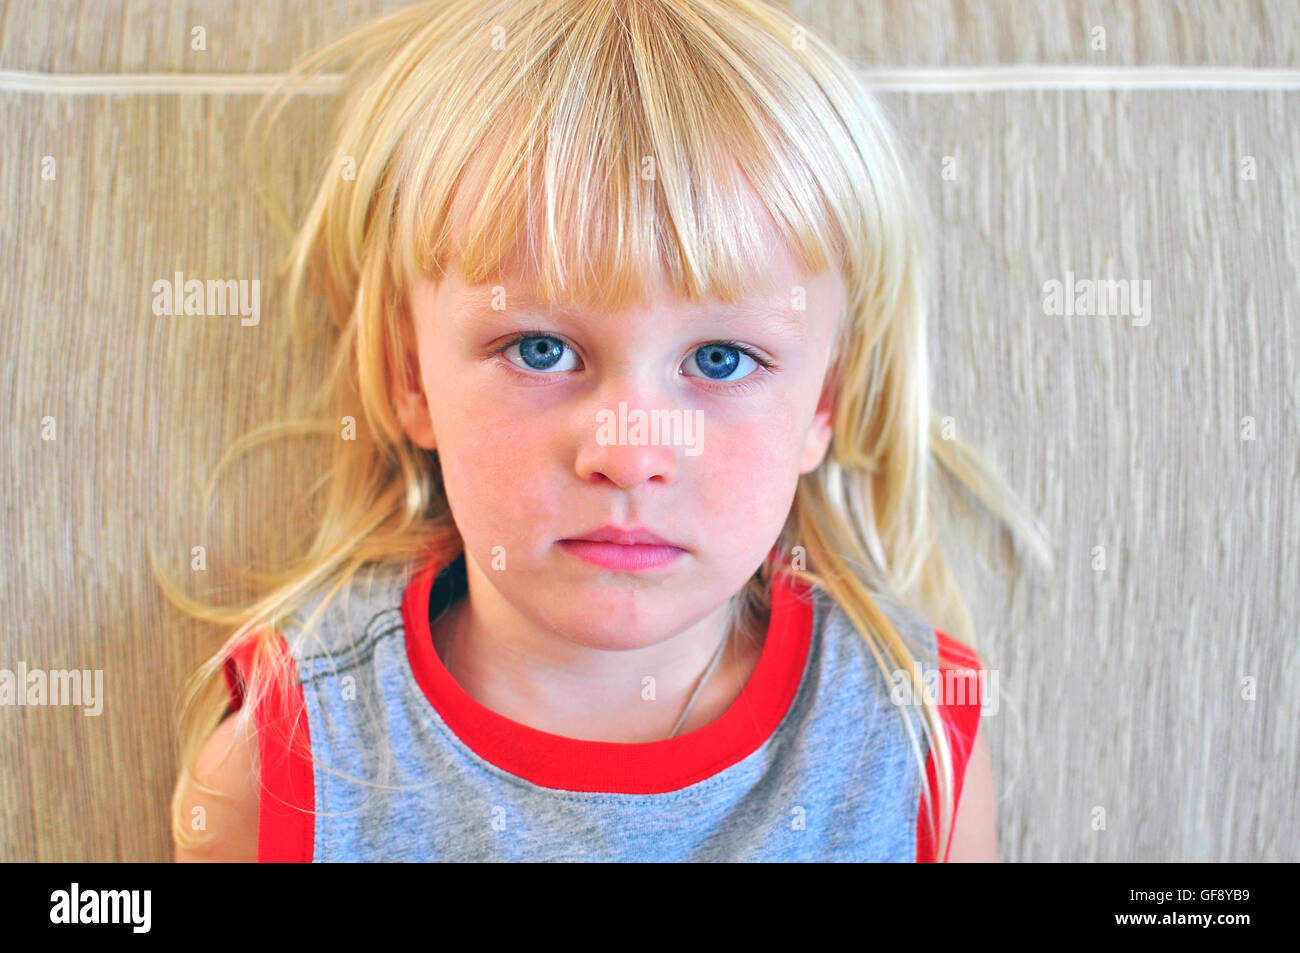 Portrait eines kleinen Jungen mit blonden Haaren und blauen Augen Stockfoto